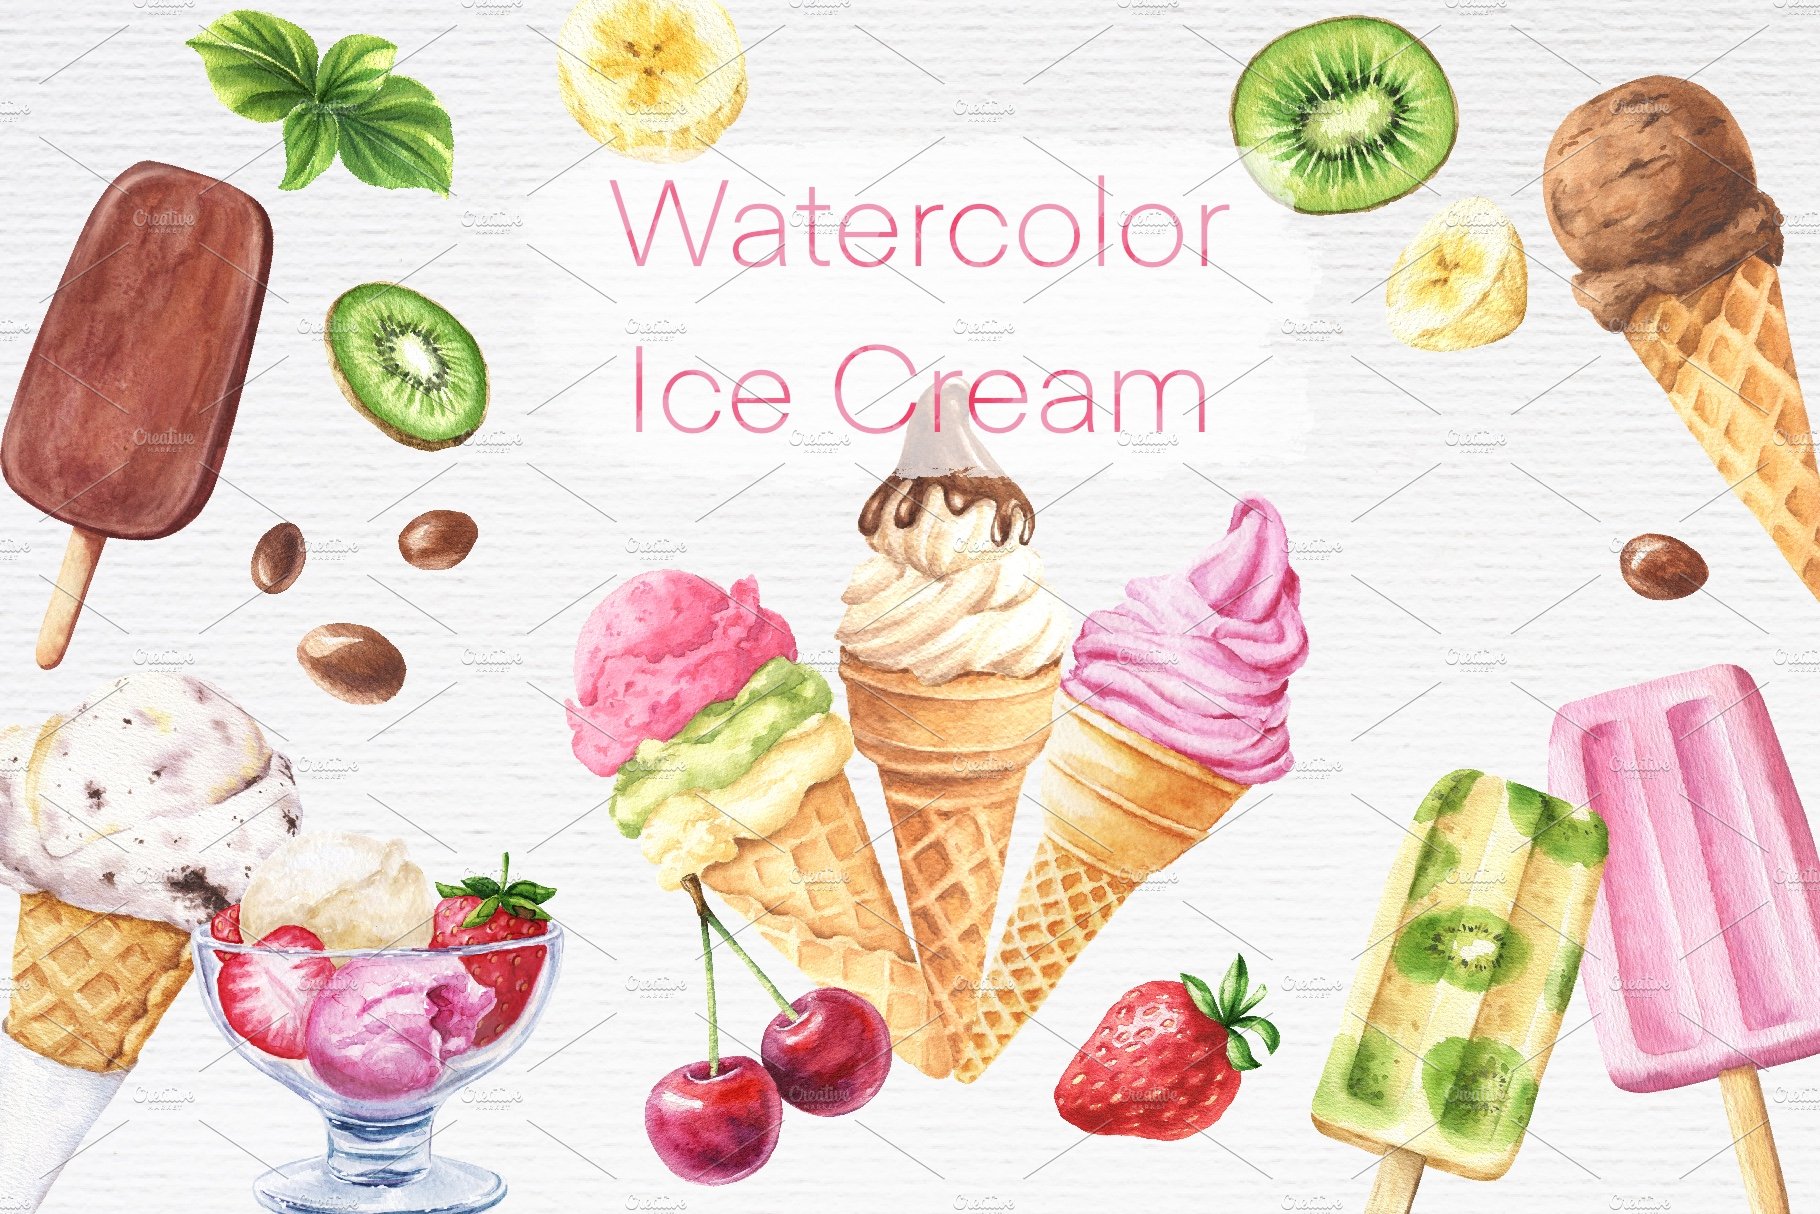 Watercolor Ice Cream cover image.